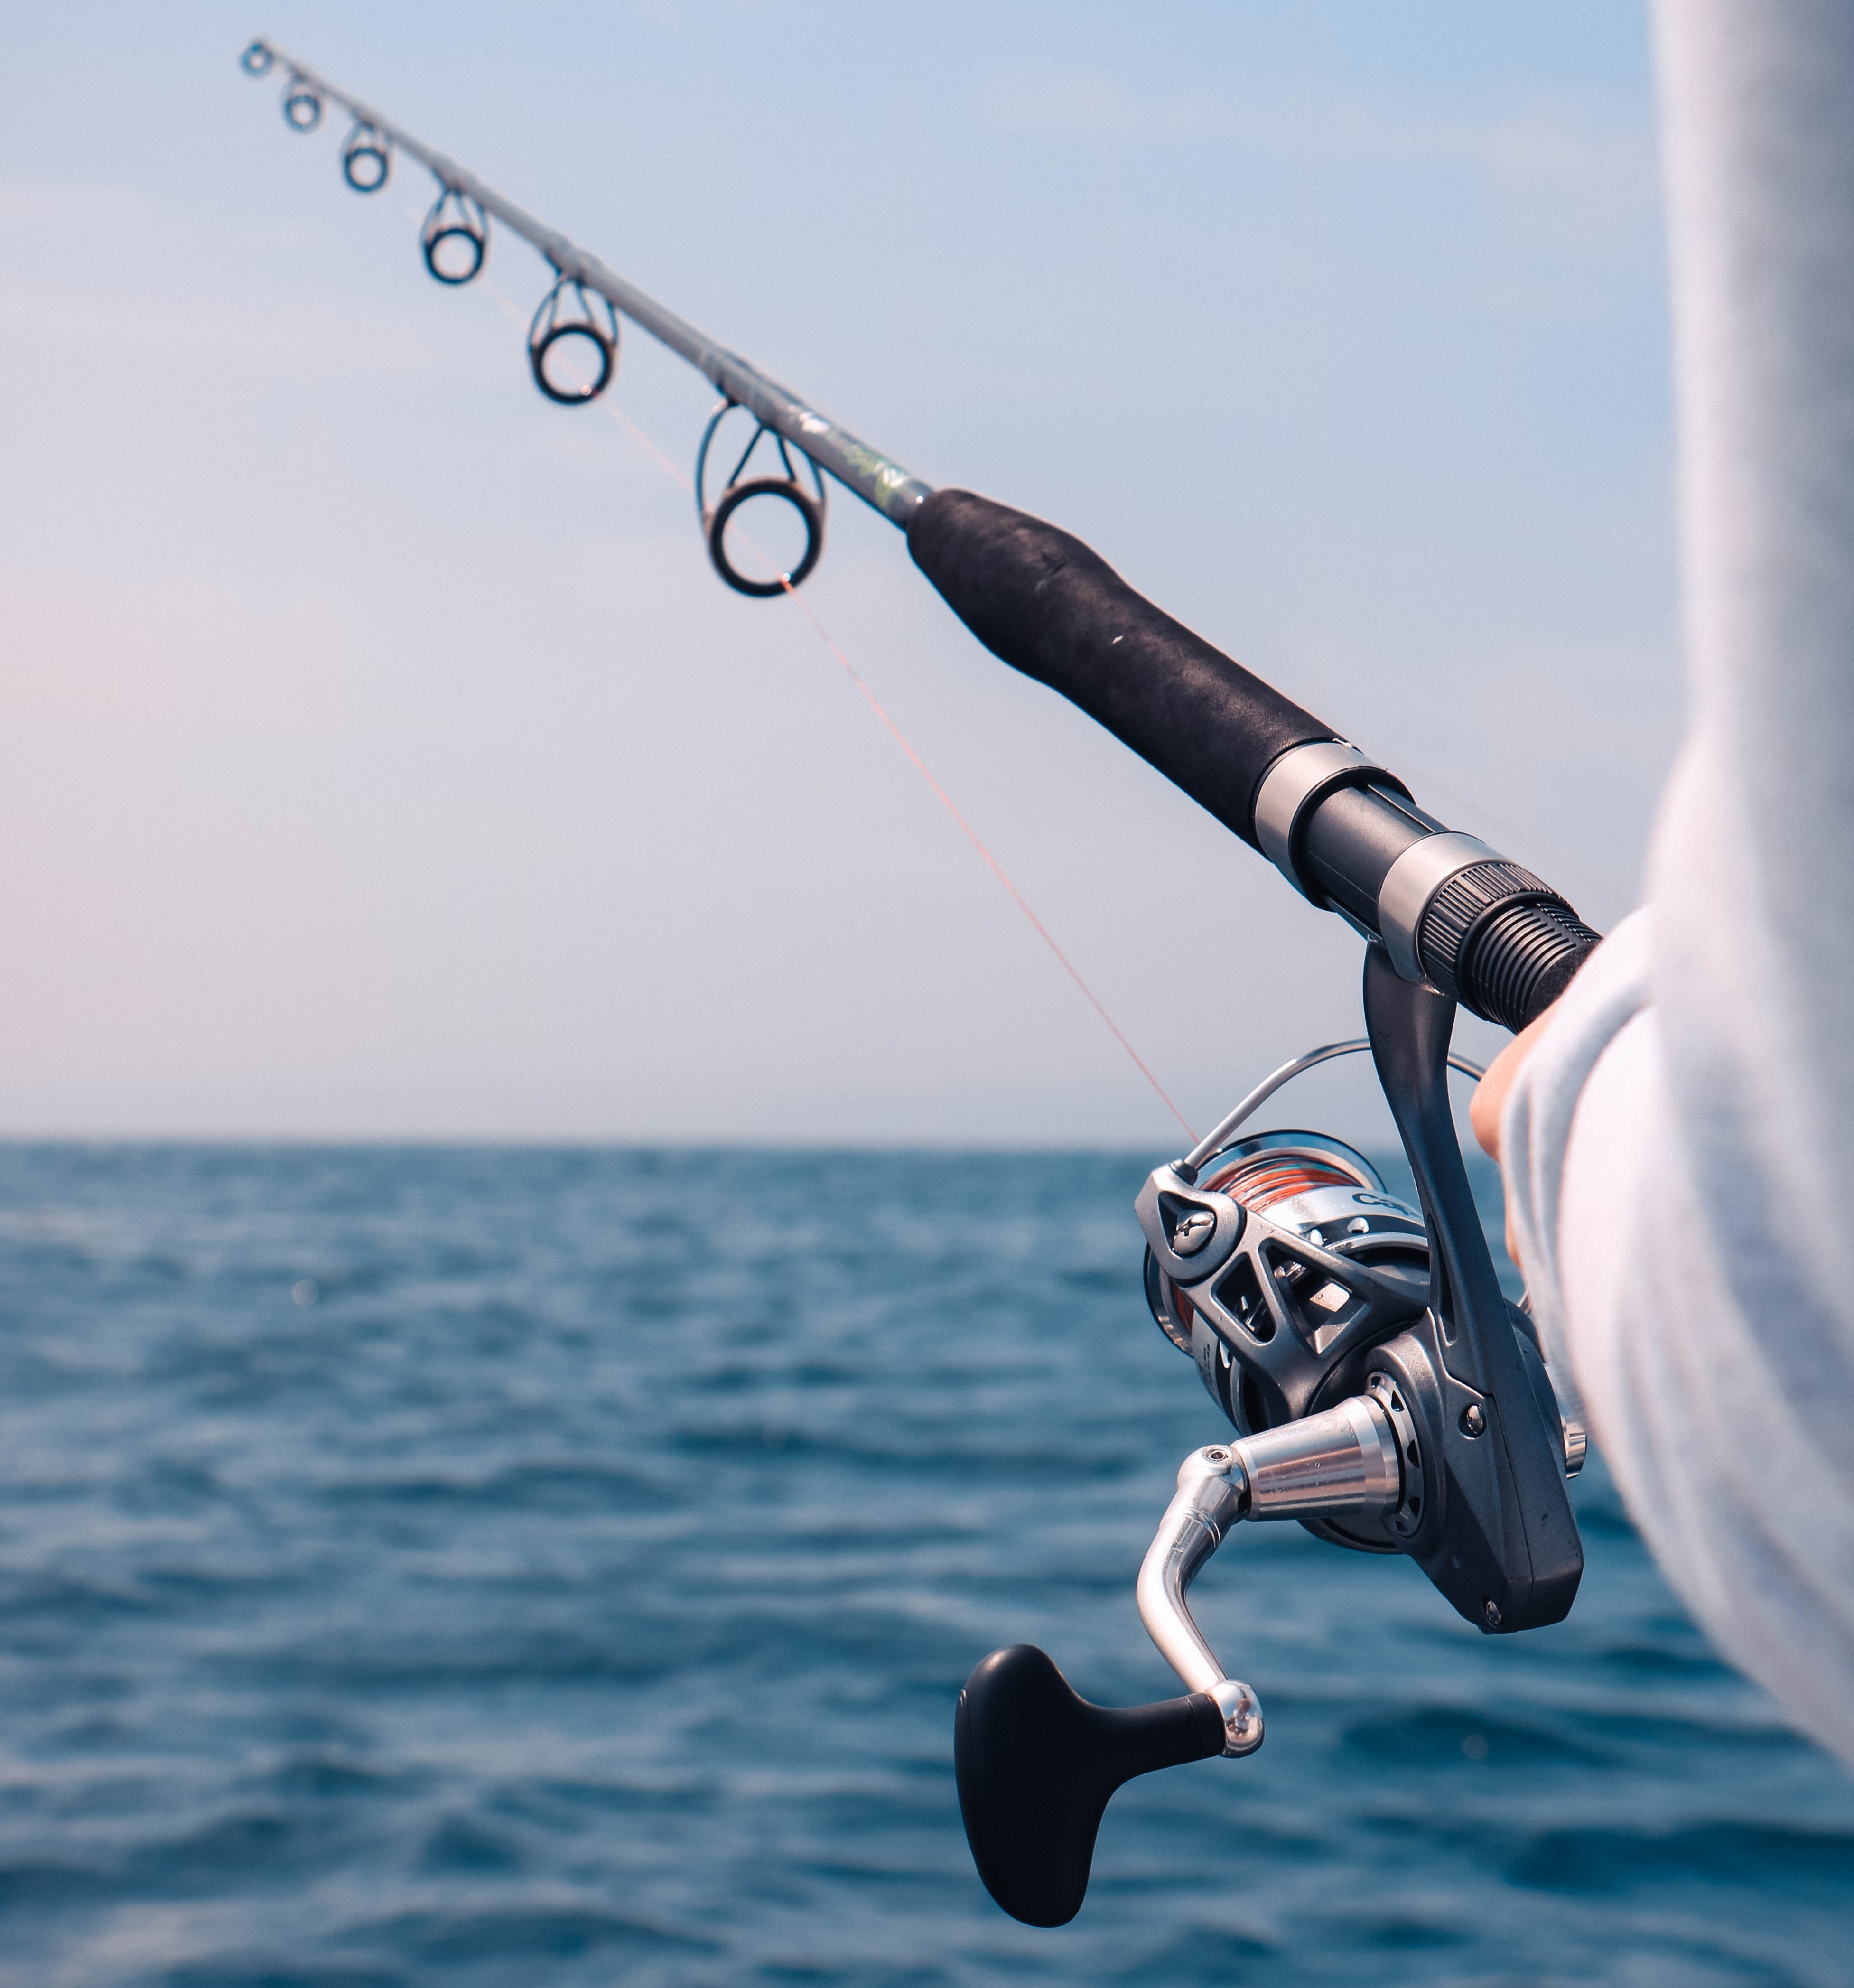 Fishing Rod | Mathieu Le Roux on Unsplash